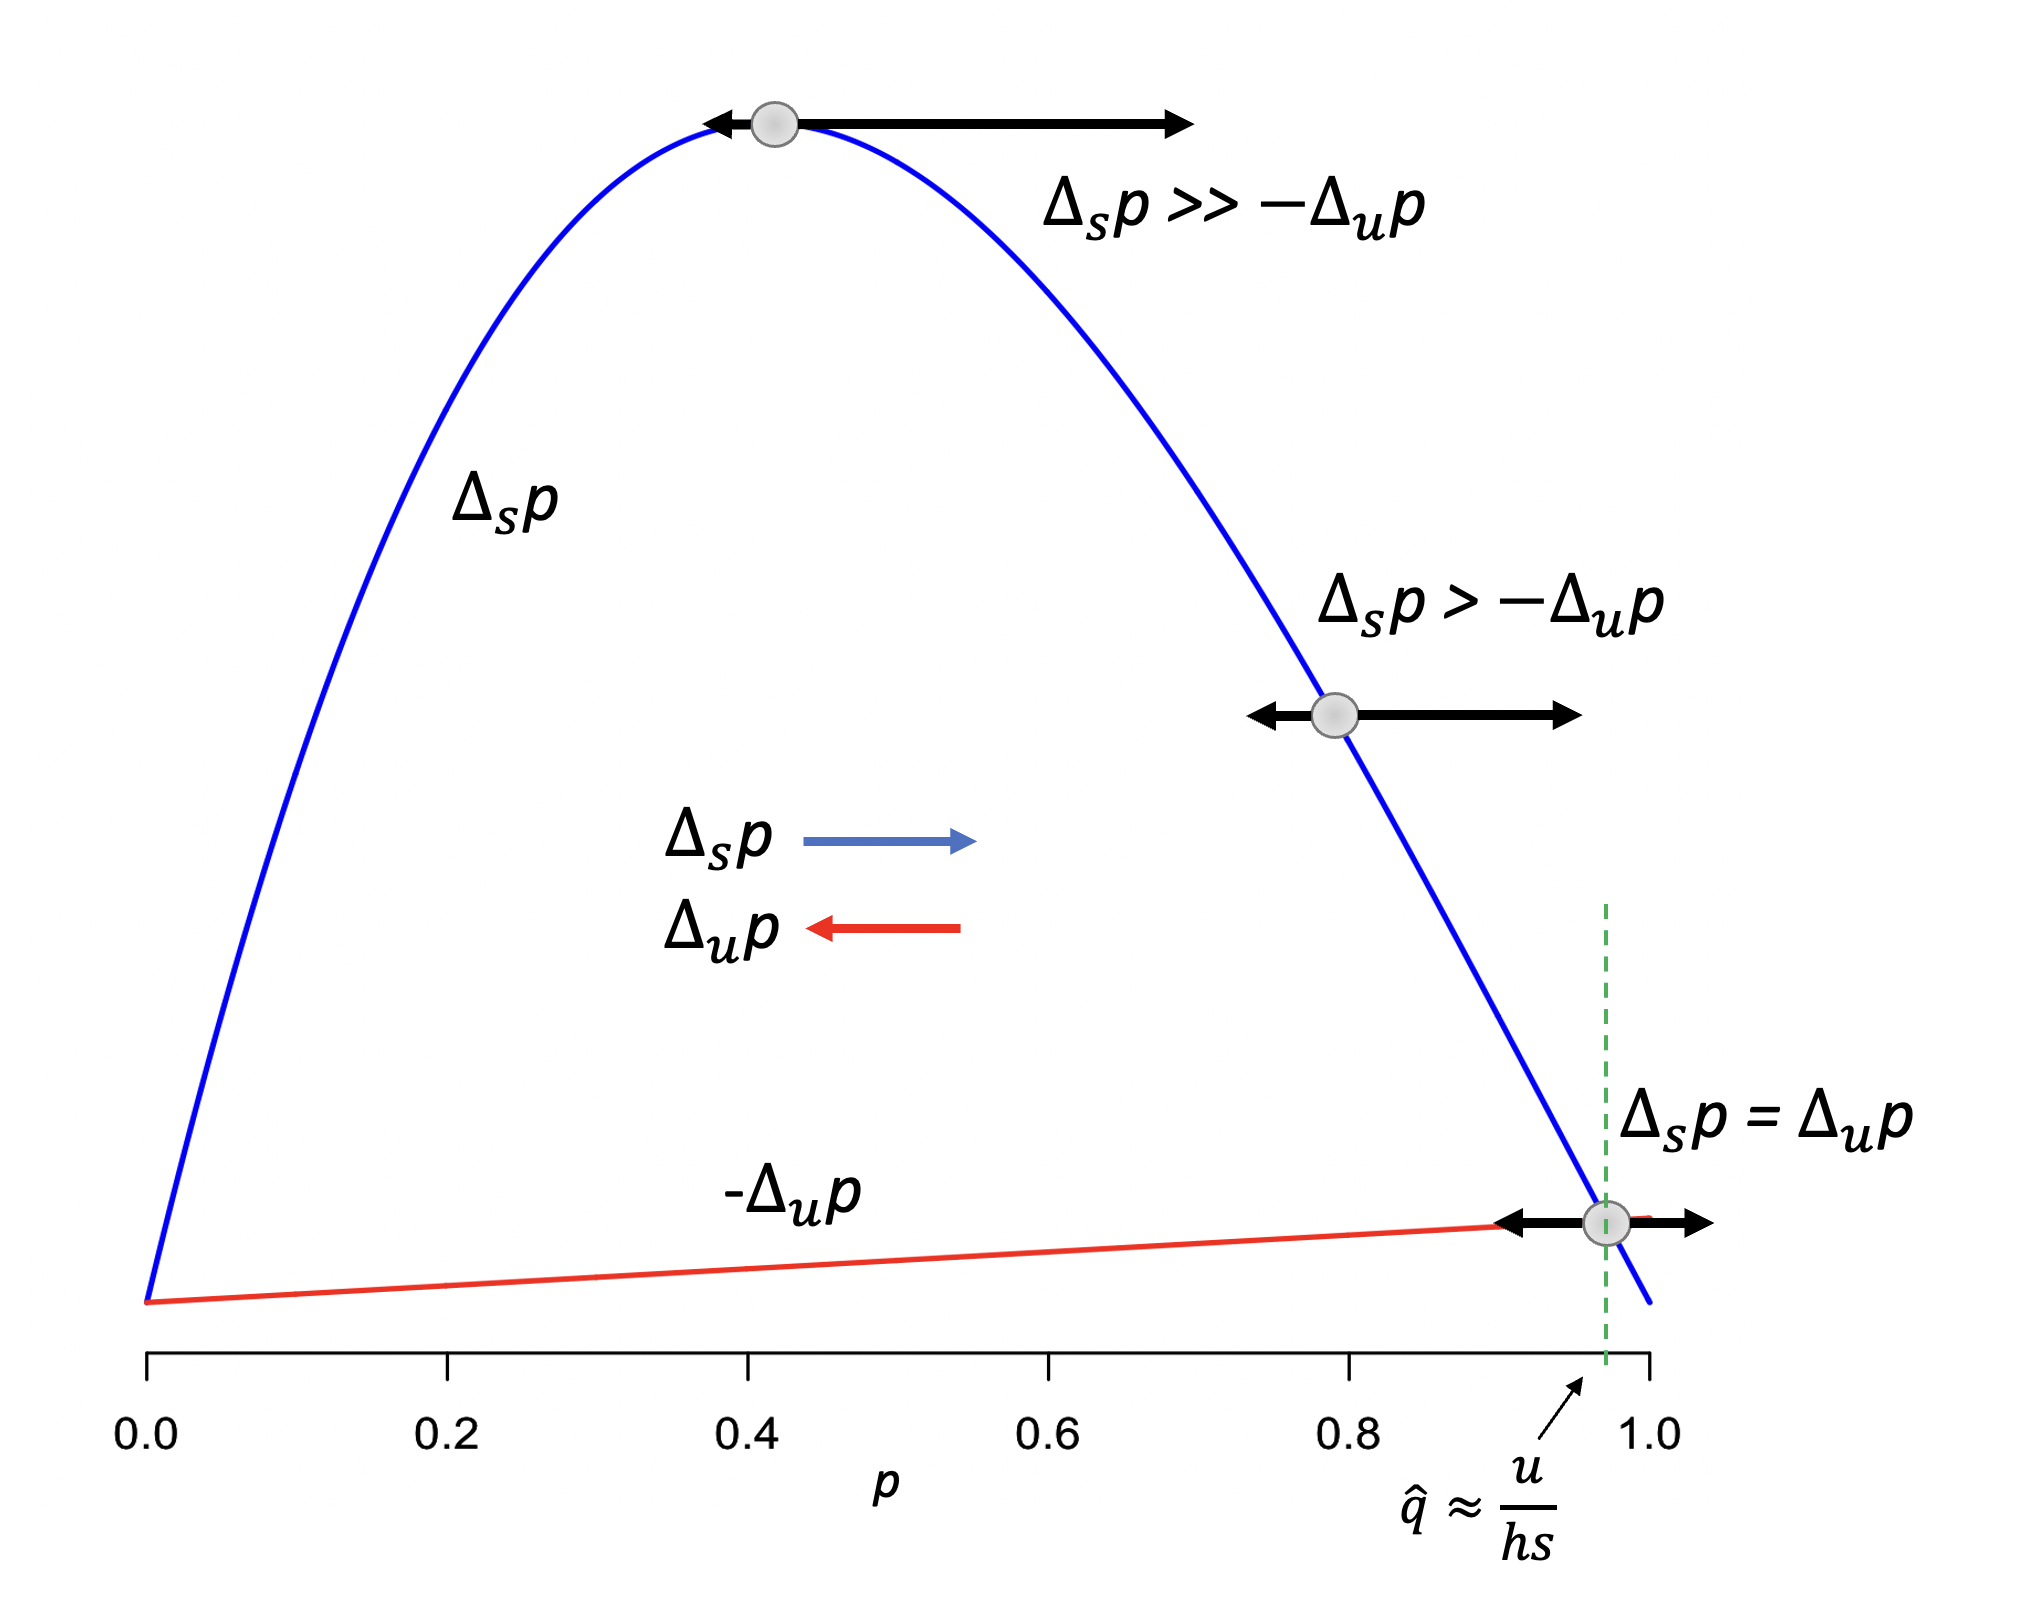 Ilustración del equilibrio selección-mutación. La selección tenderá a aumentar la frecuencia del alelo \(A_1\) (\(\Delta_s p\), línea azul), mientras que la mutación tenderá a reducirla (\(\Delta_u p\), línea roja). Cuando ambas fuerzas son de igual magnitud (abajo a la derecha) se establecerá un equilibrio en una frecuencia \(\hat{q}=\frac{u}{hs}\). Los valores usados para generar la figura son \(h=\frac{1}{3}\), \(s=0.1\) y \(u=1\)x\(10^{-3}\). En la figura aparece graficado \(-\Delta_u p\) para poder ubicar el punto de corte de ambas fuerzas.